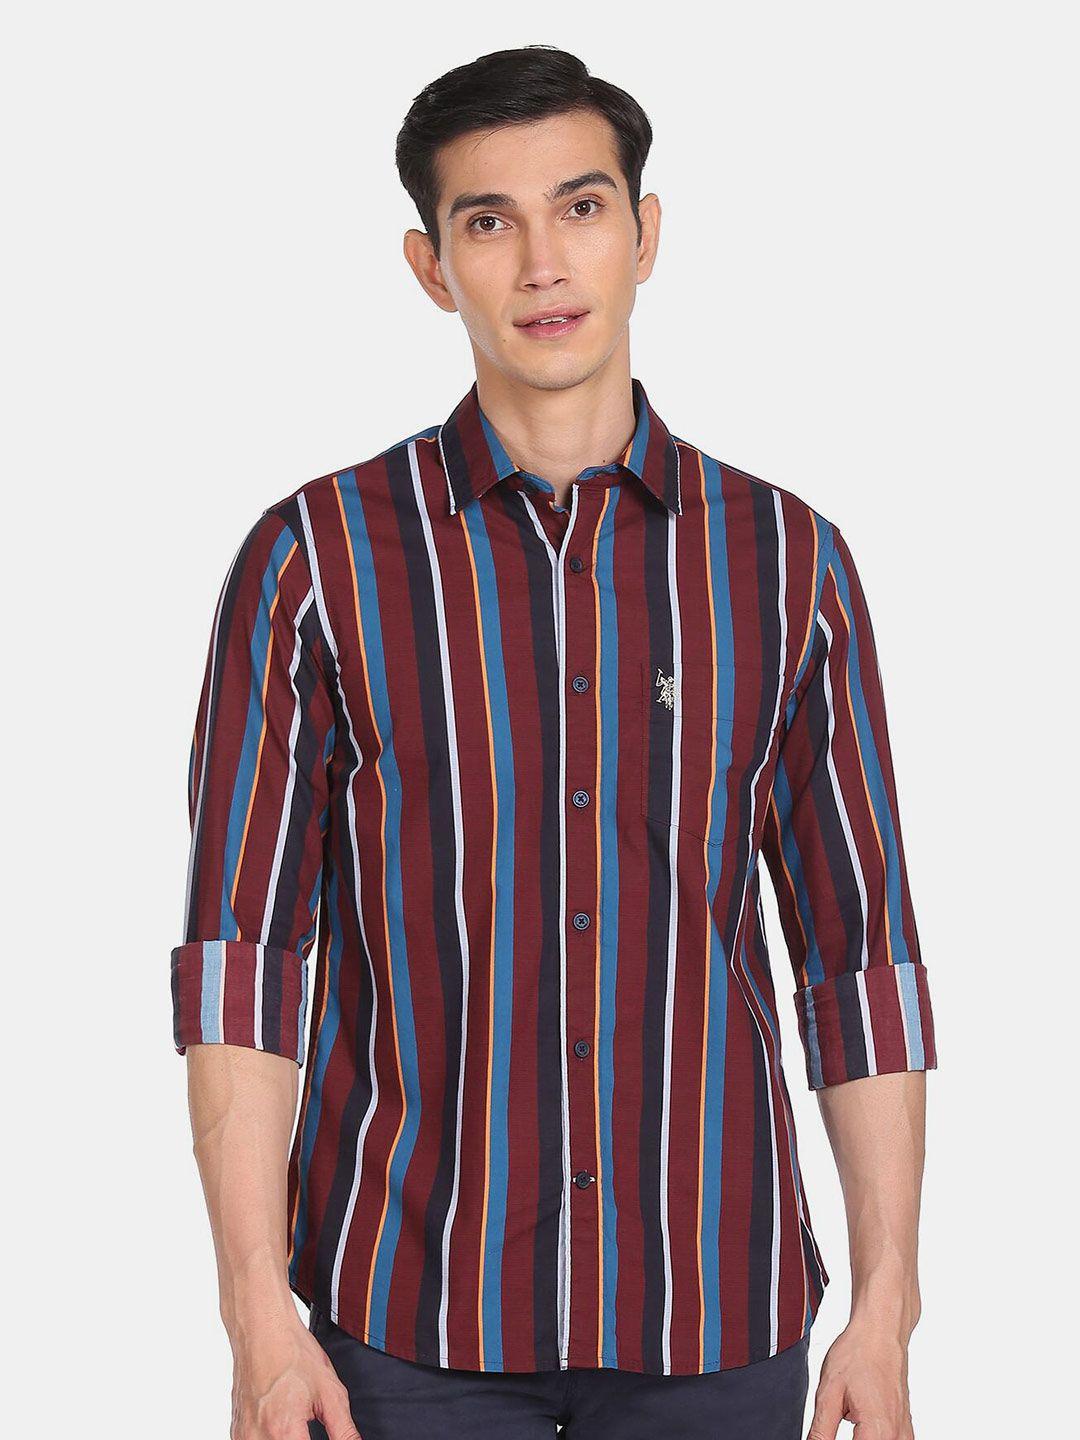 u-s-polo-assn-men-multicoloured-striped-cotton-casual-shirt